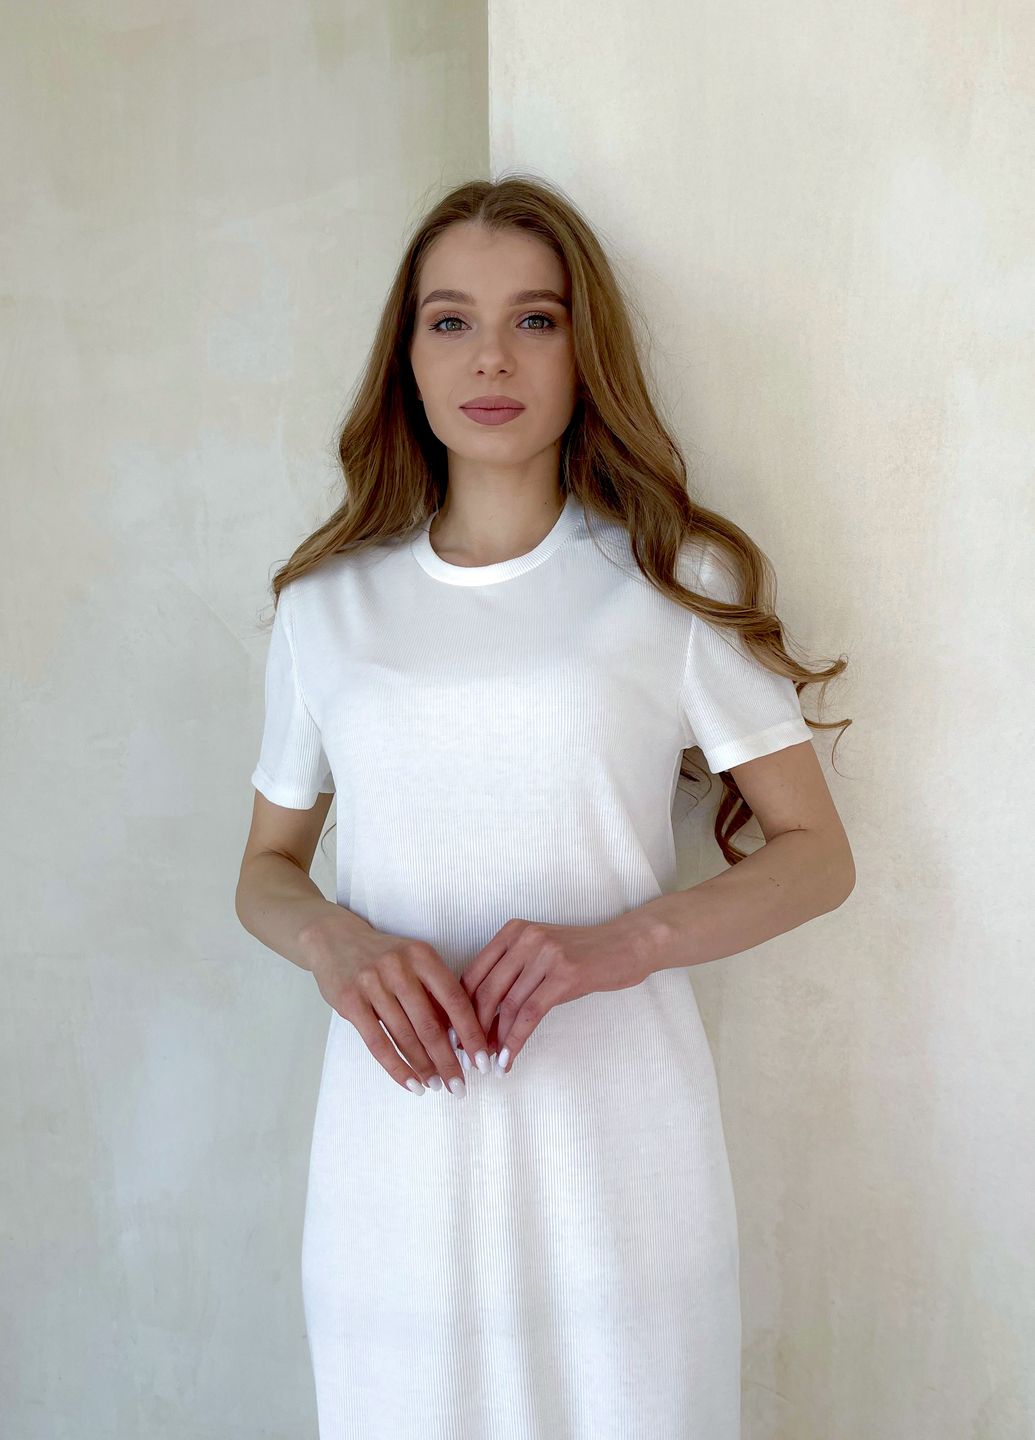 Купить Платье-футболка до колена в рубчик бирюзовое Merlini Милан 700000145 размер 42-44 (S-M) в интернет-магазине